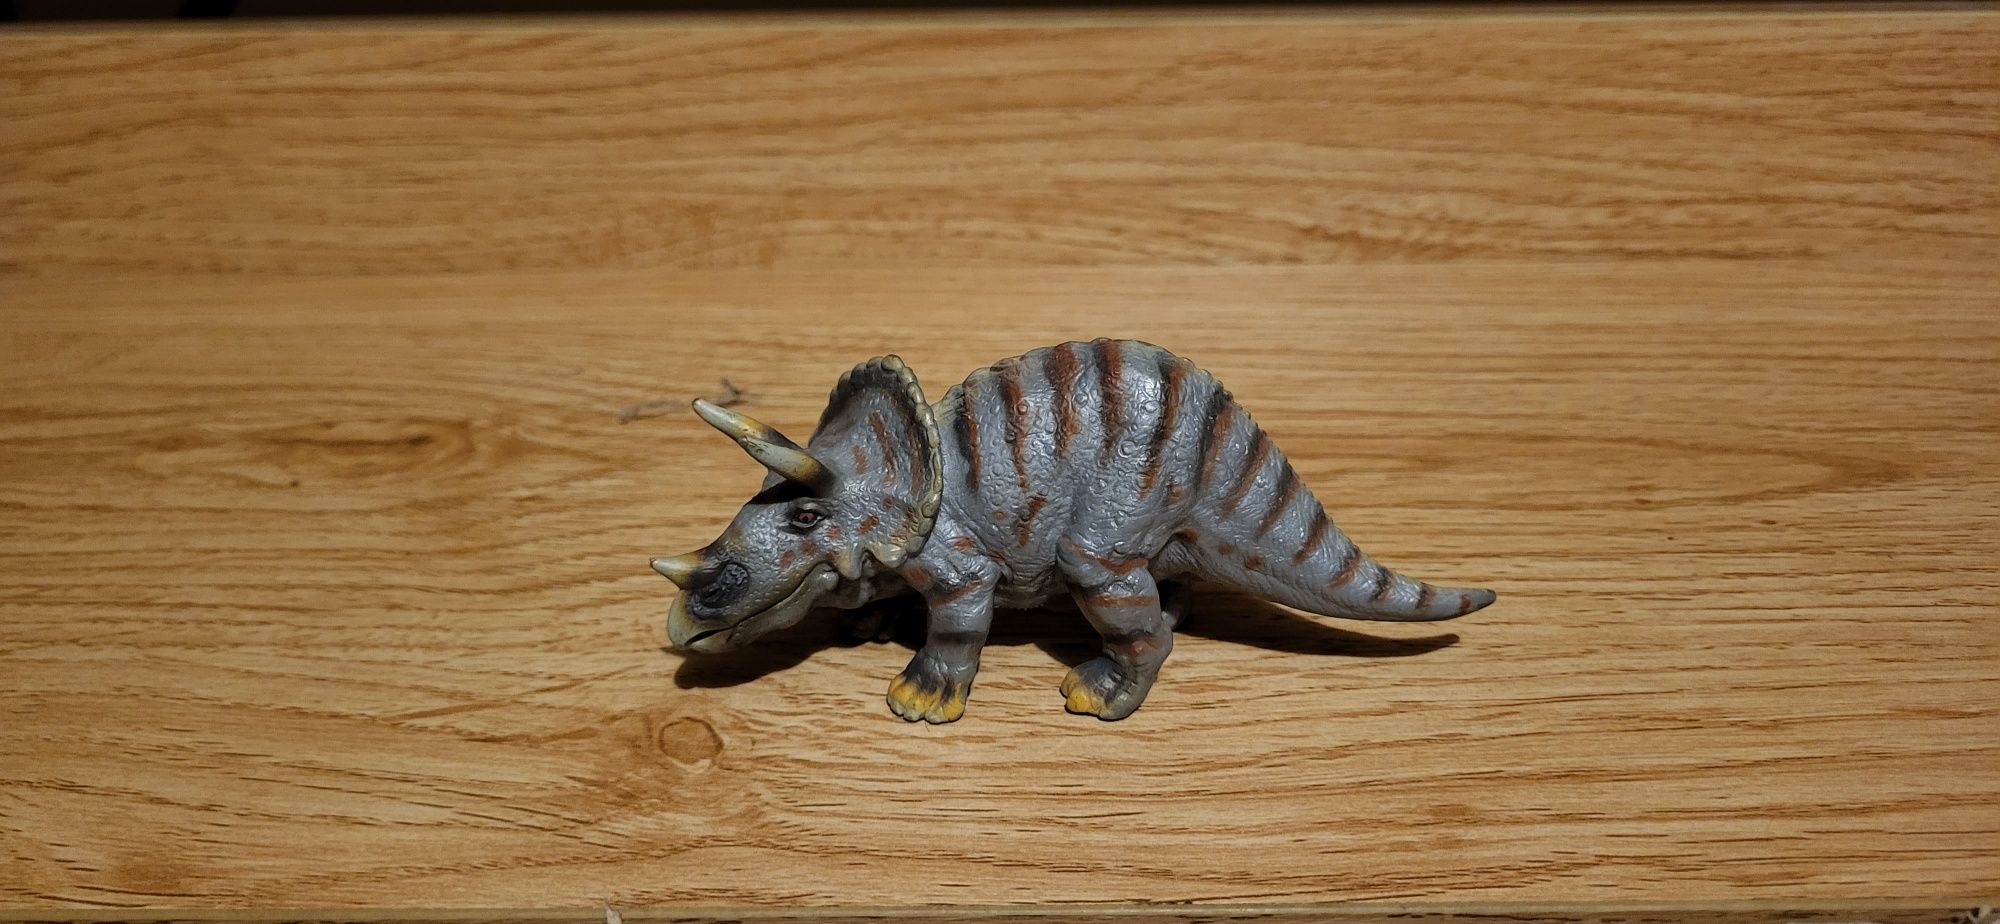 Schleich dinozaur triceratops figurki model wycofany z 2002 r.